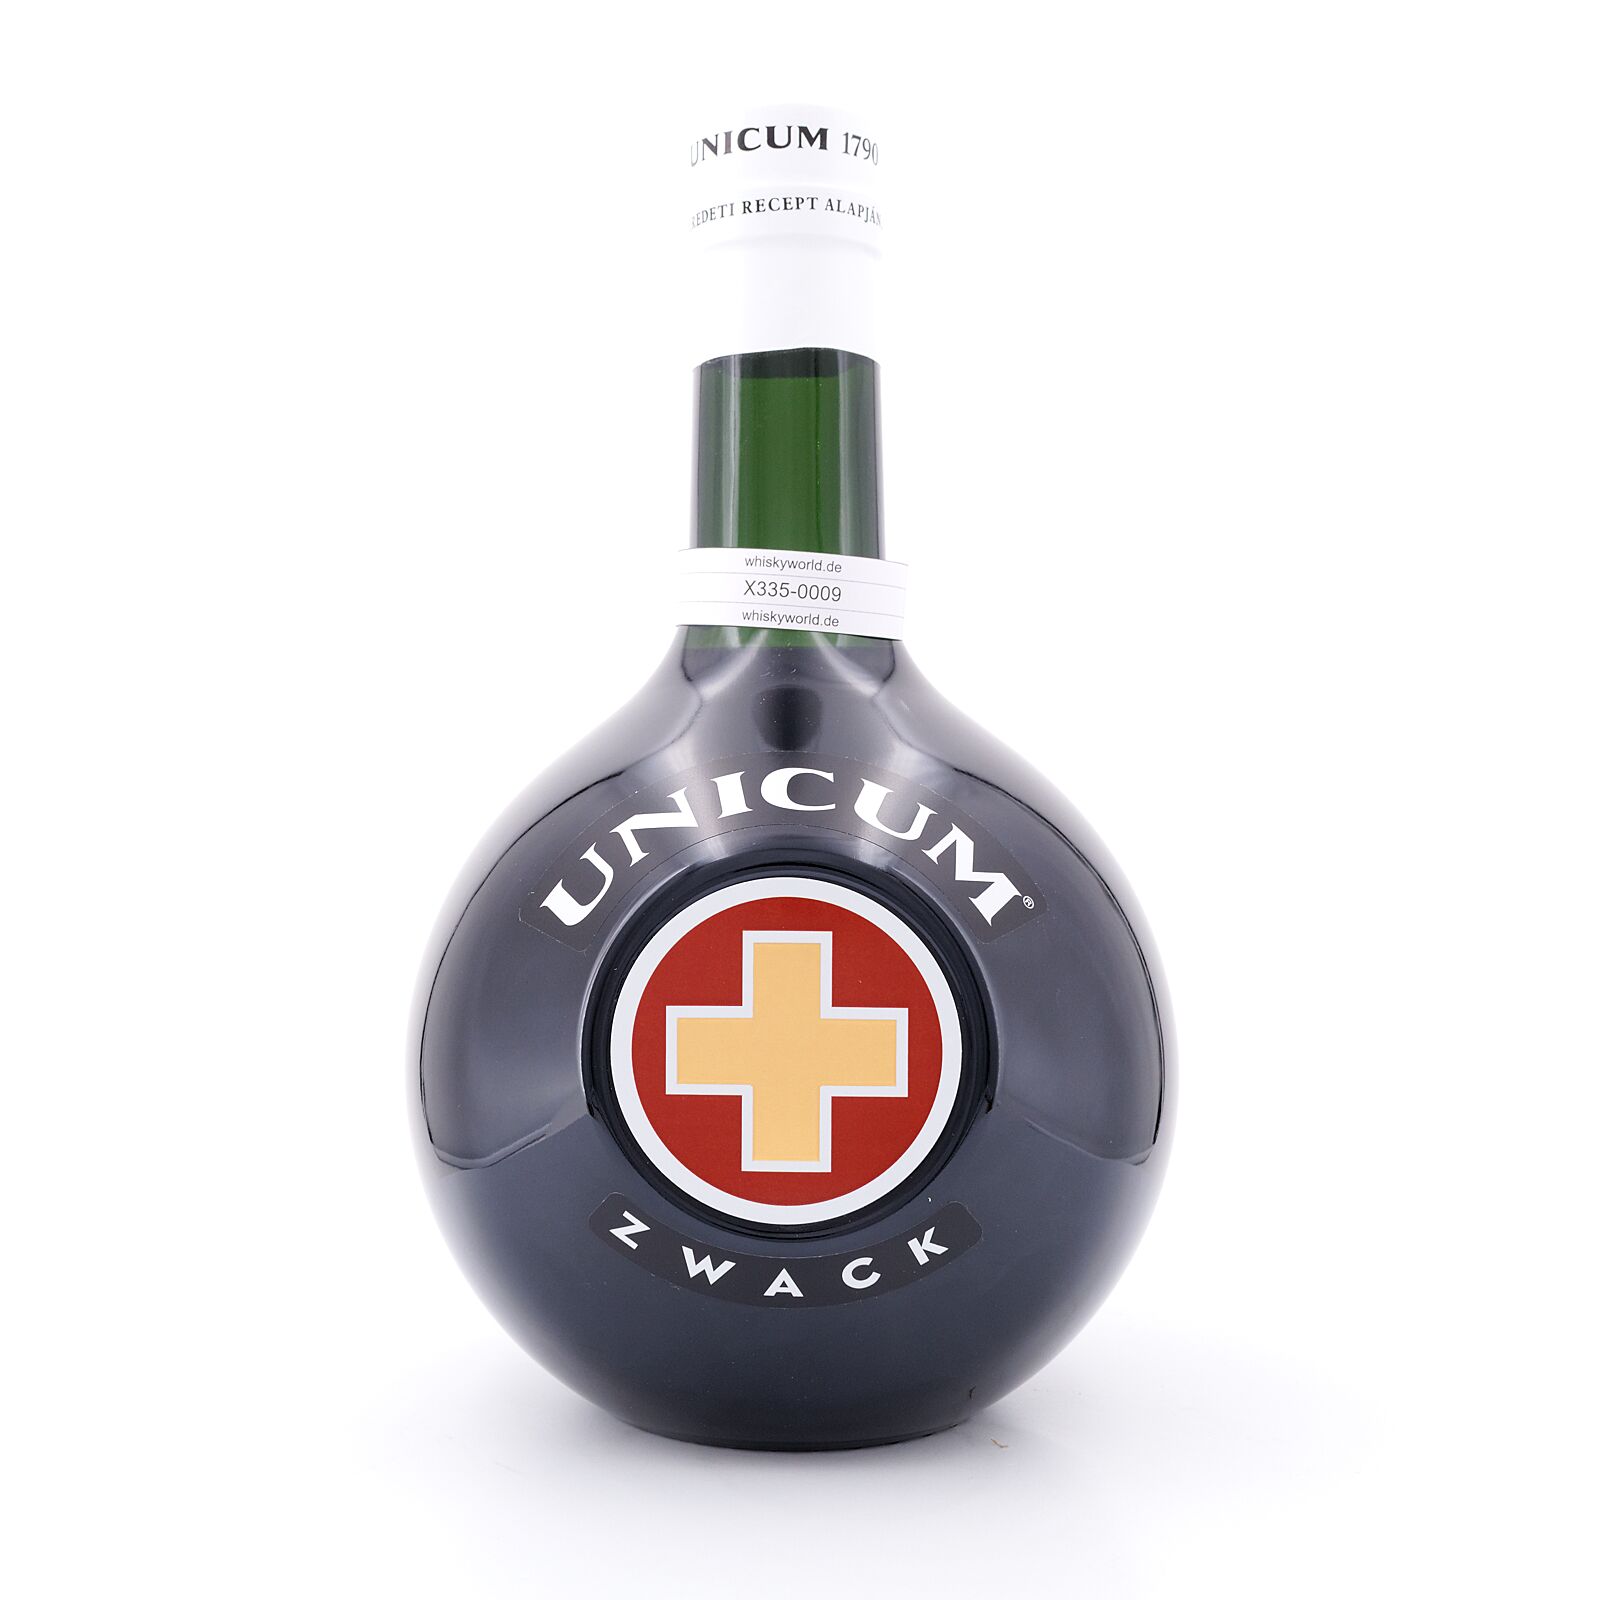 Zwack Unicum Liter vol 3 40.0% Flasche Liter/ Kräuterlikör 3